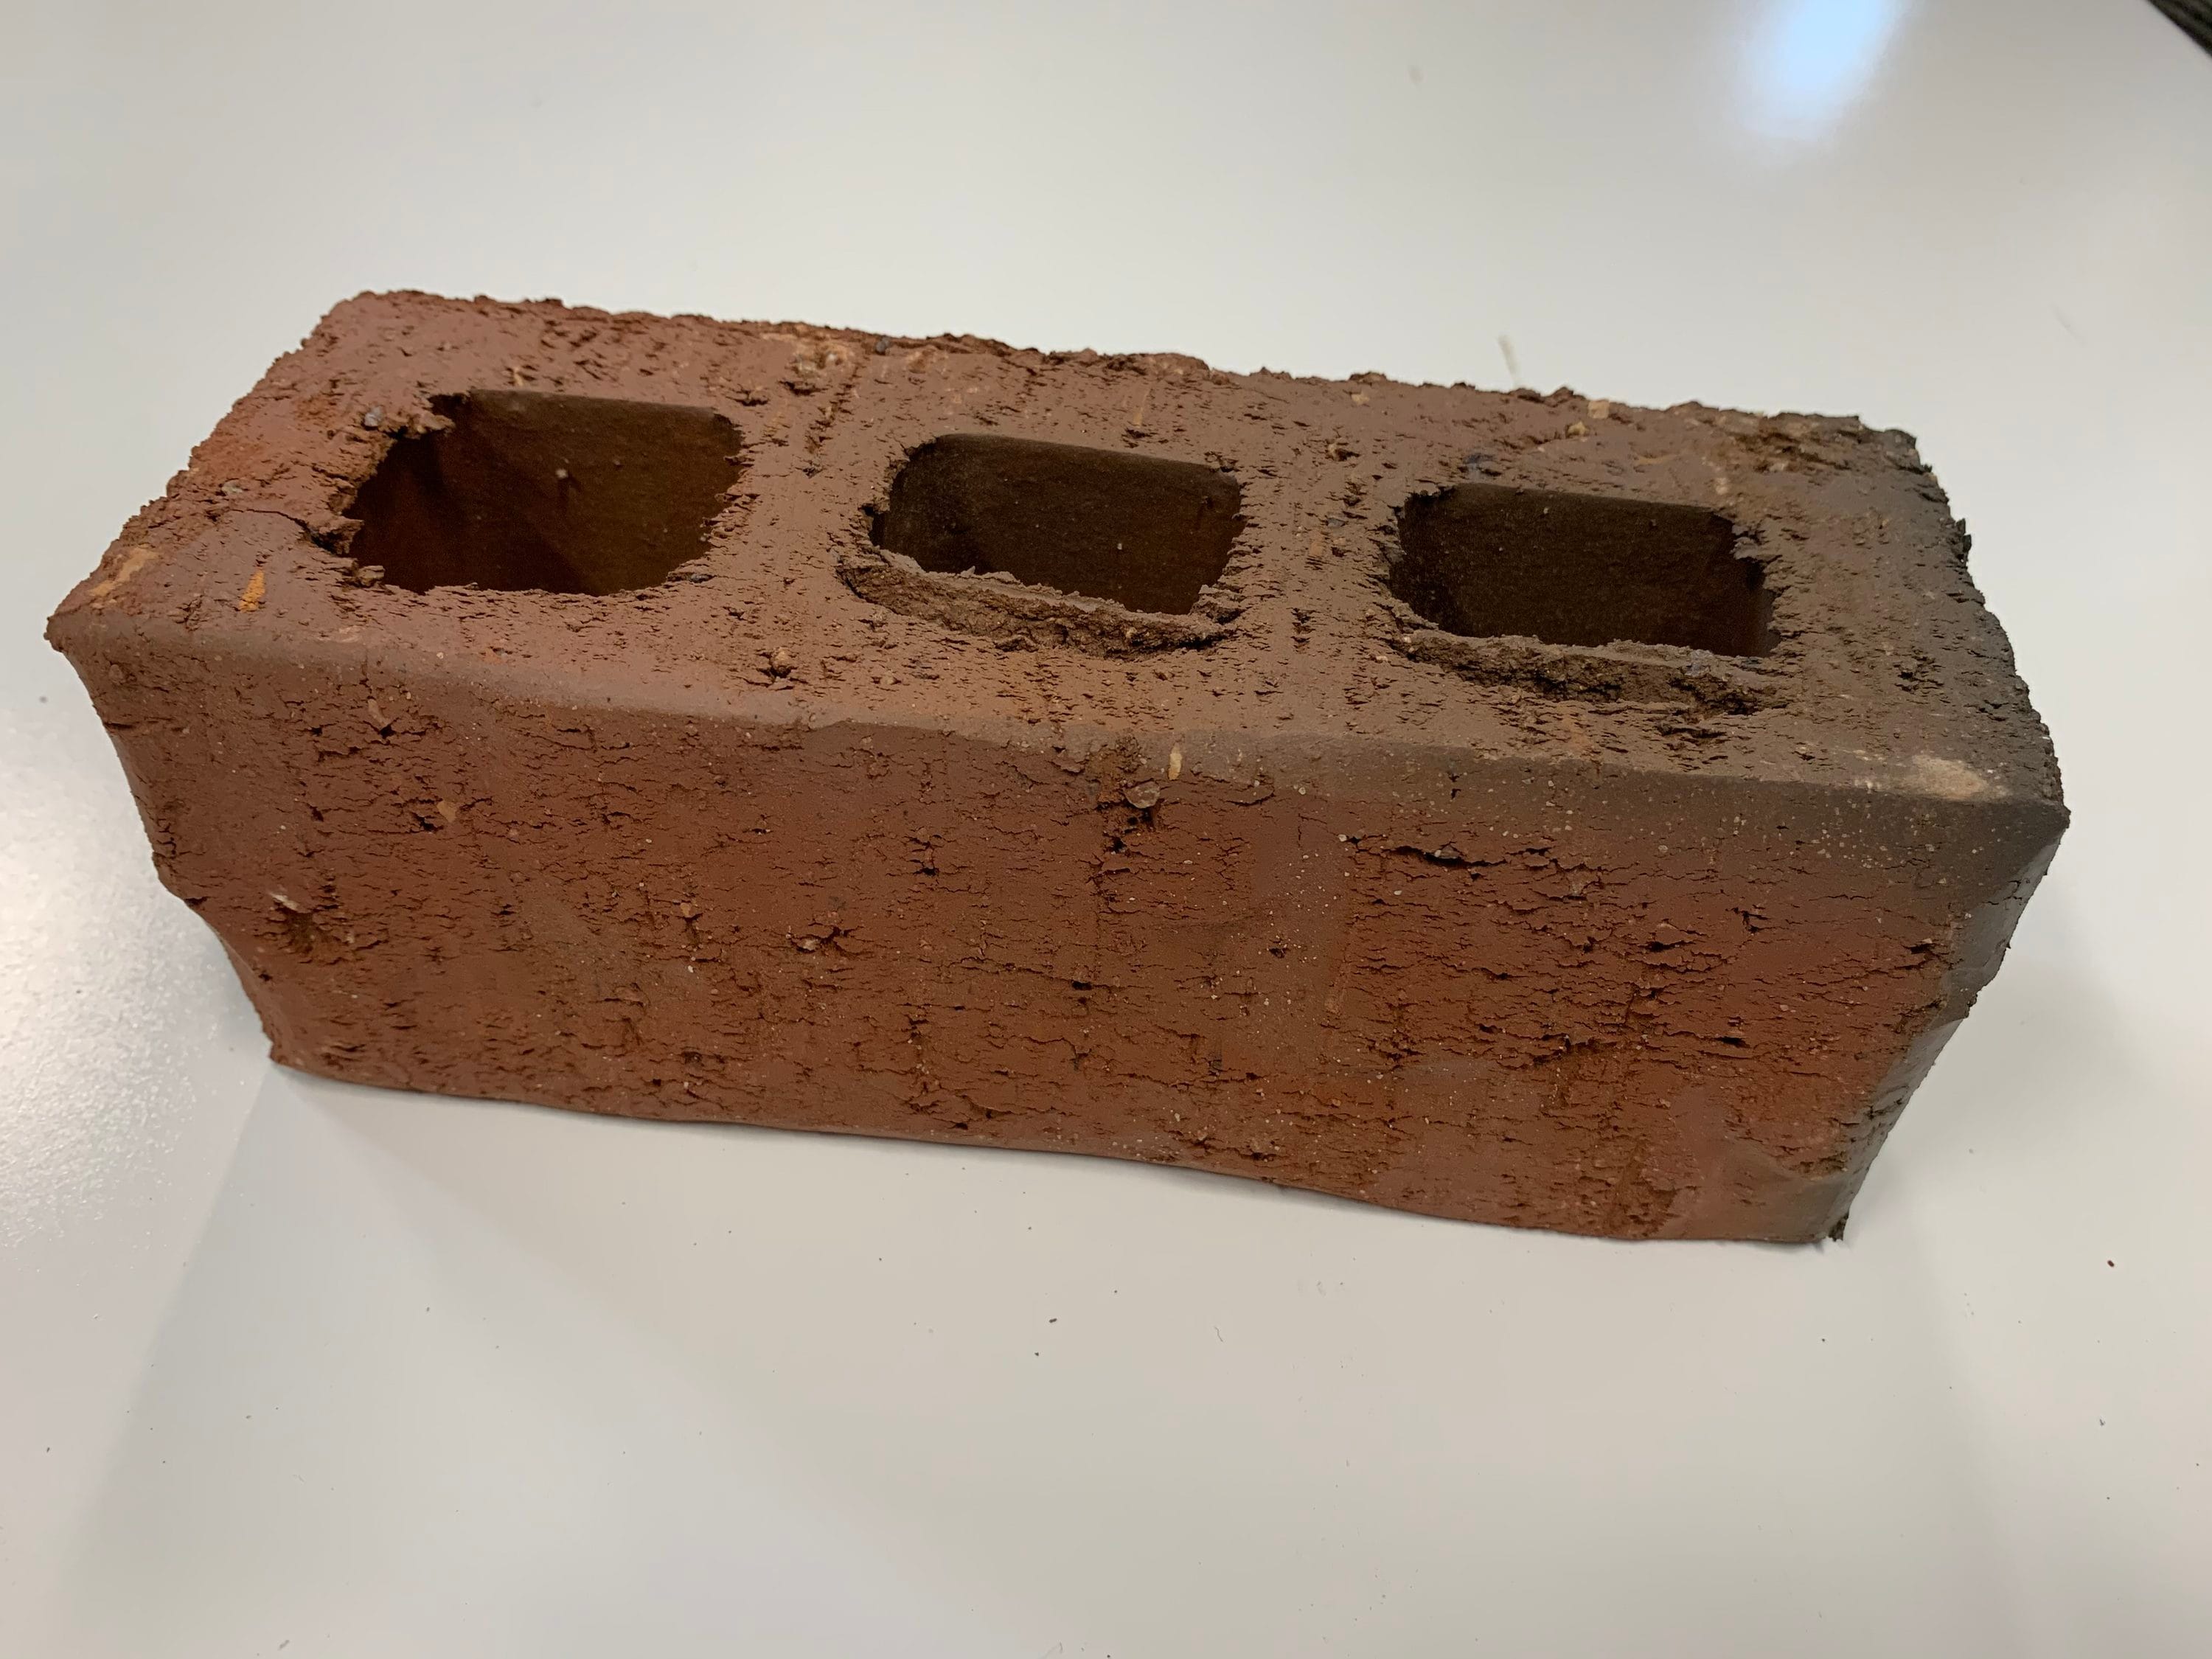 Rutland 4.5 in. x 9 in. x 1.25 in. Fire Brick (6 per Box) 604